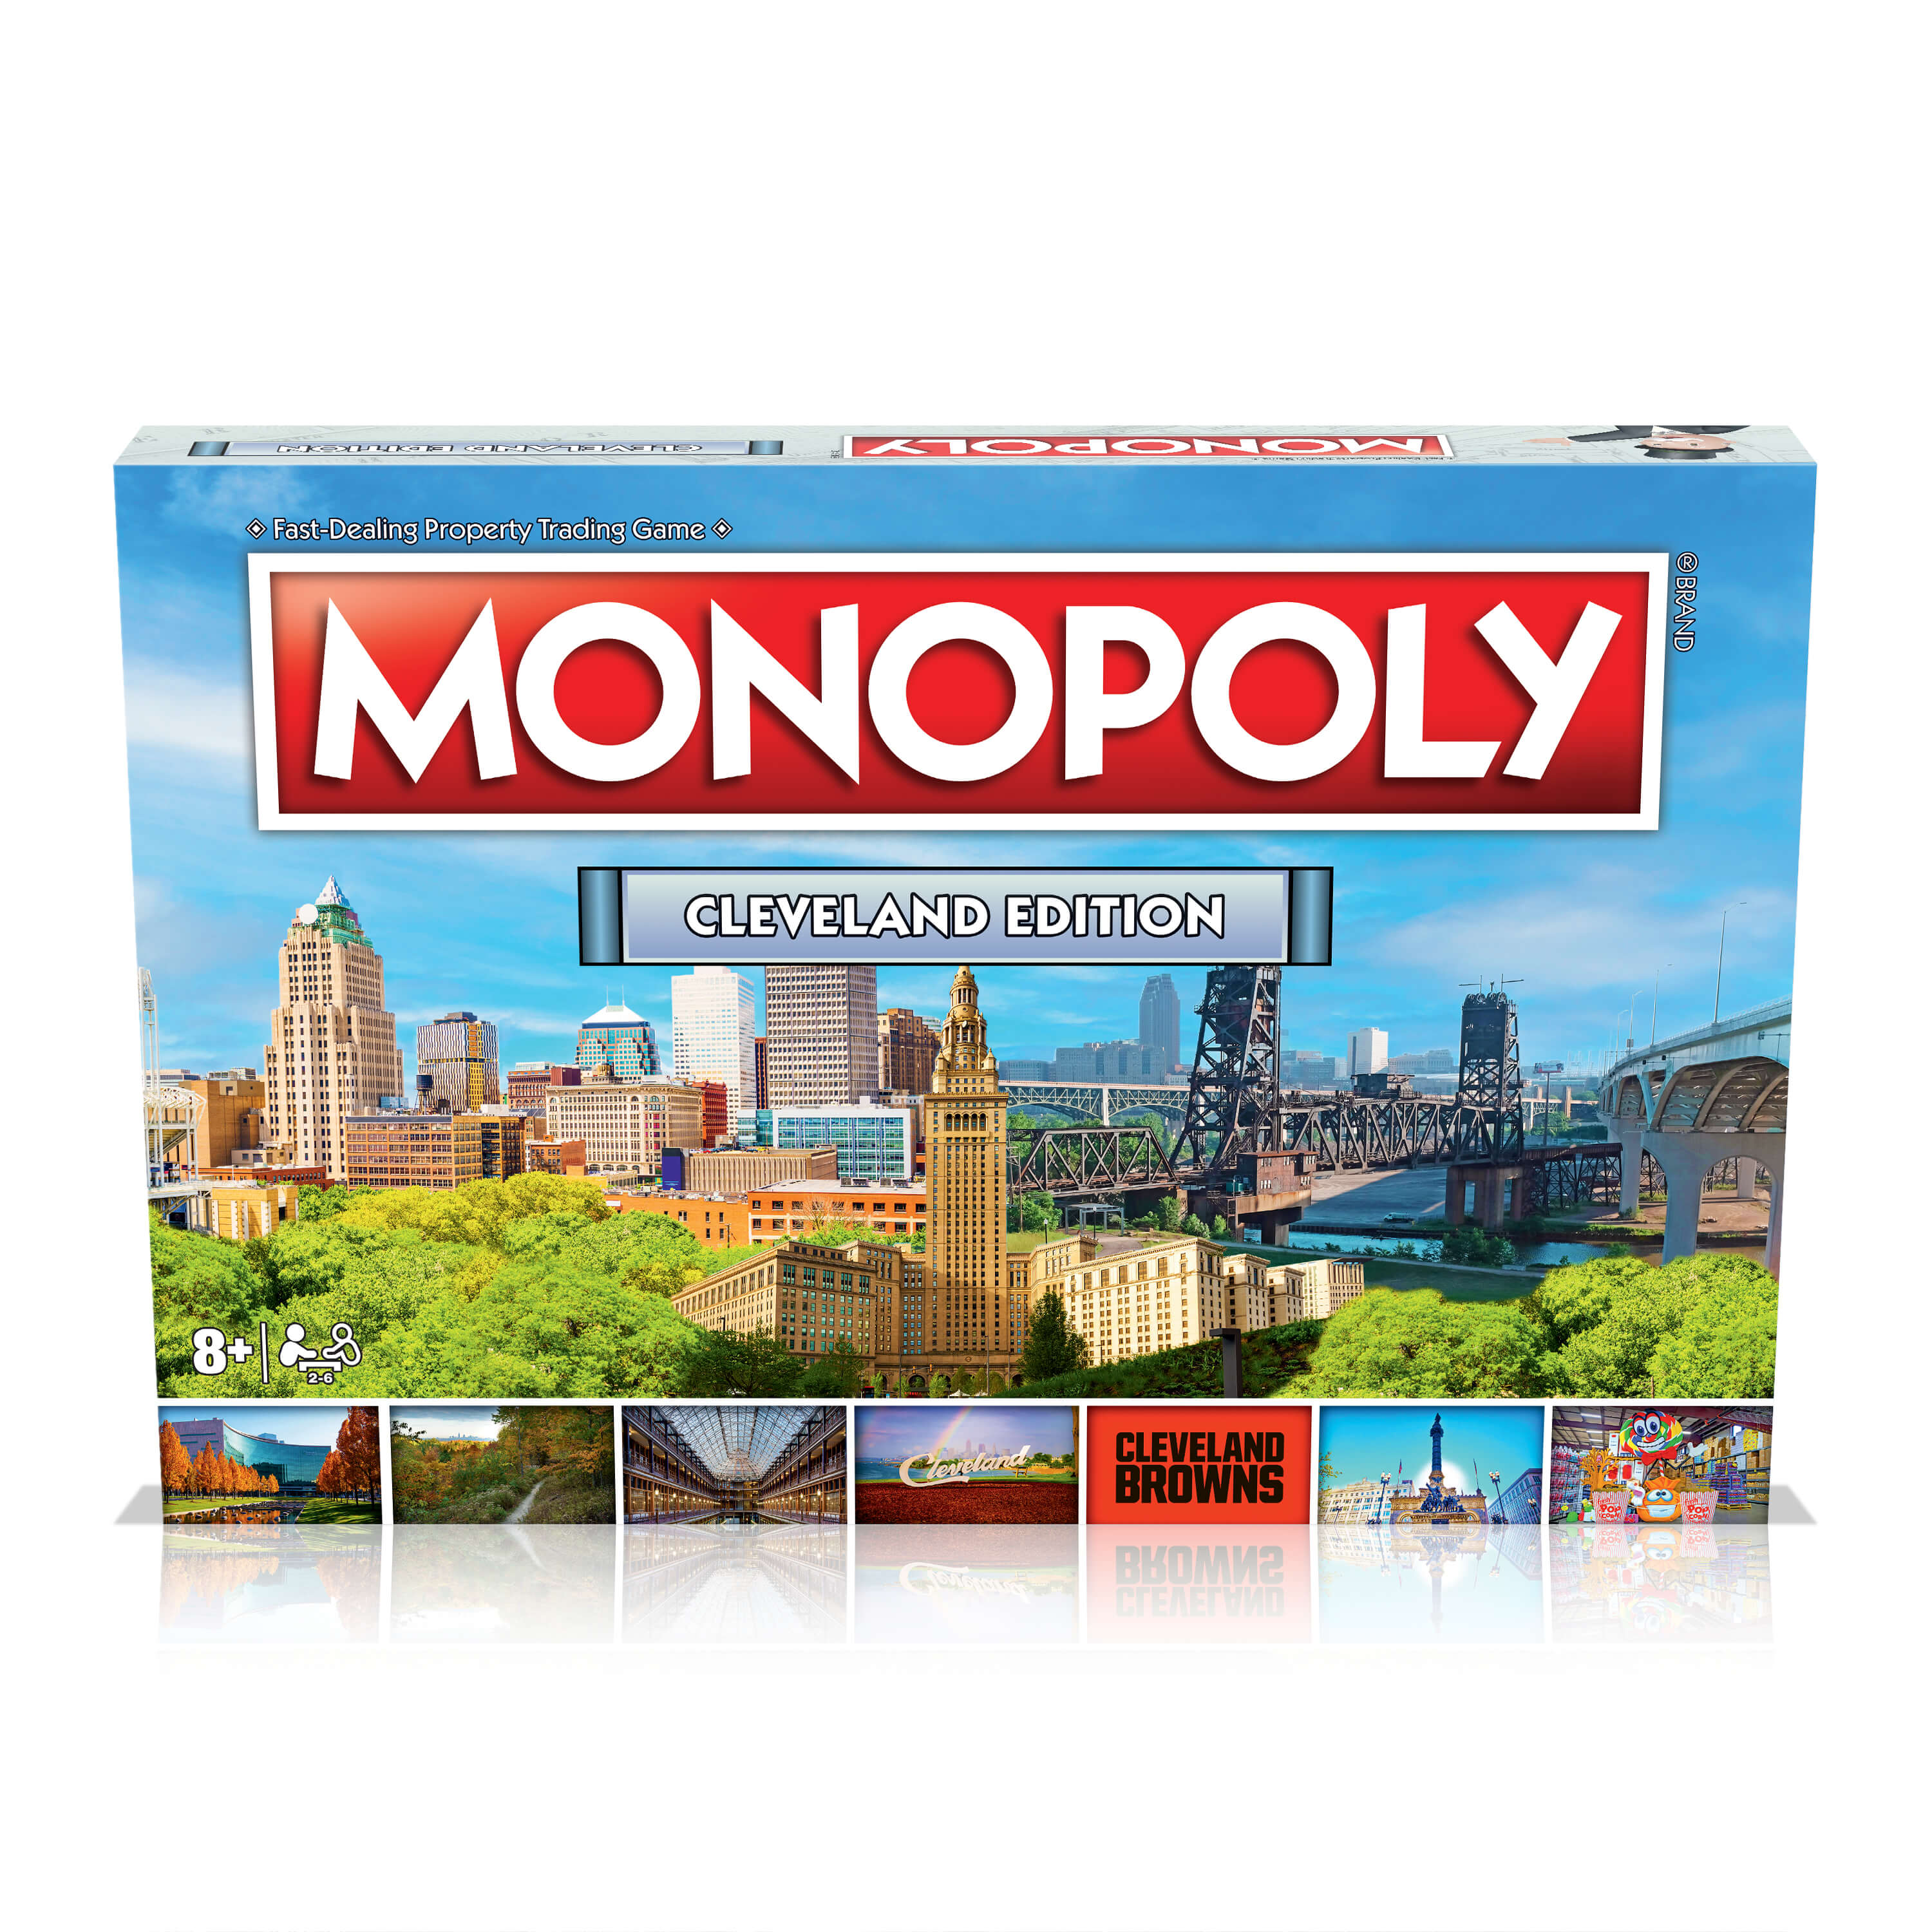 Monopoly Money LV